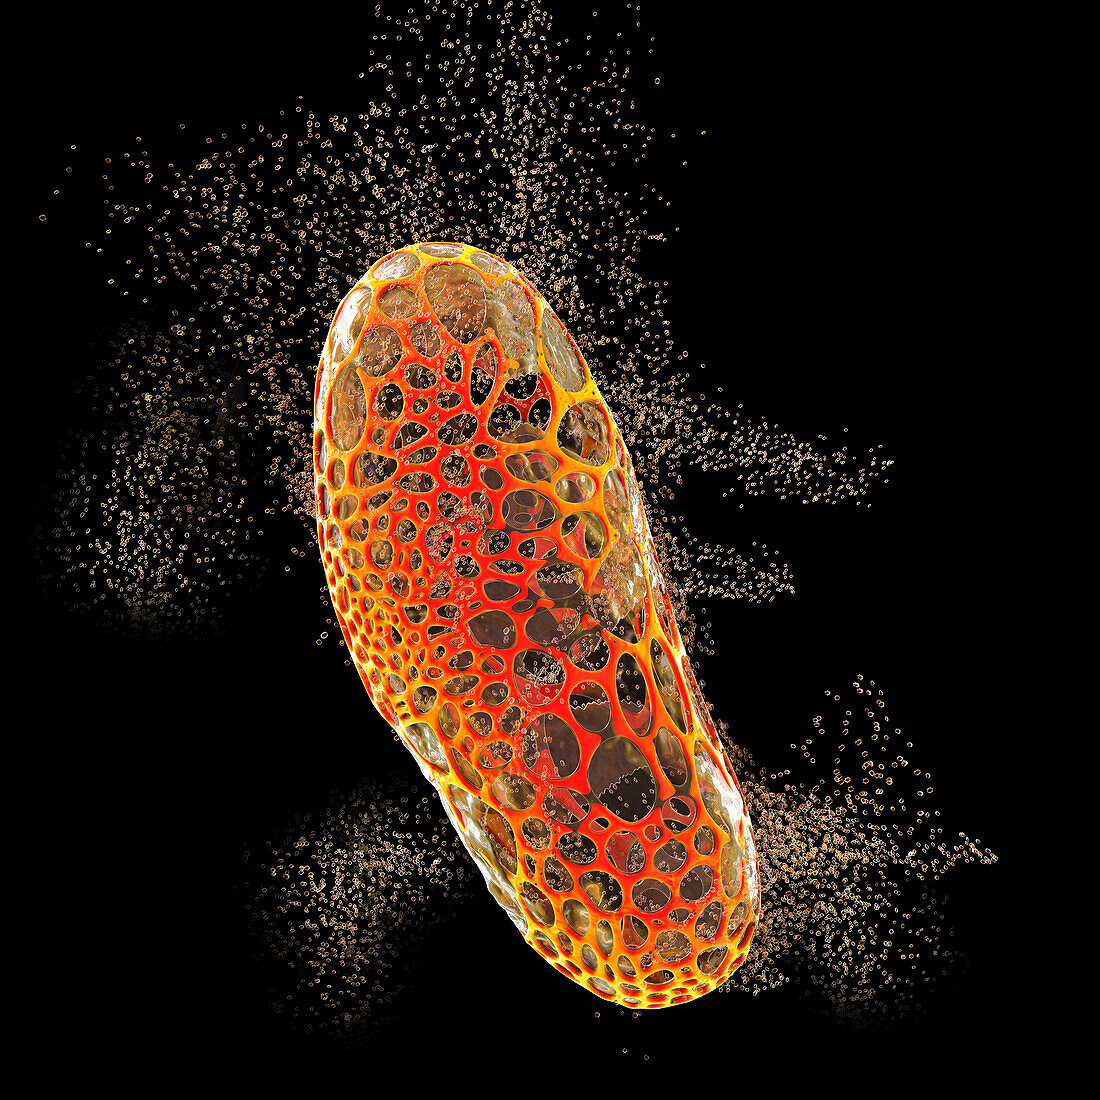 Destruction of bacterium, conceptual illustration